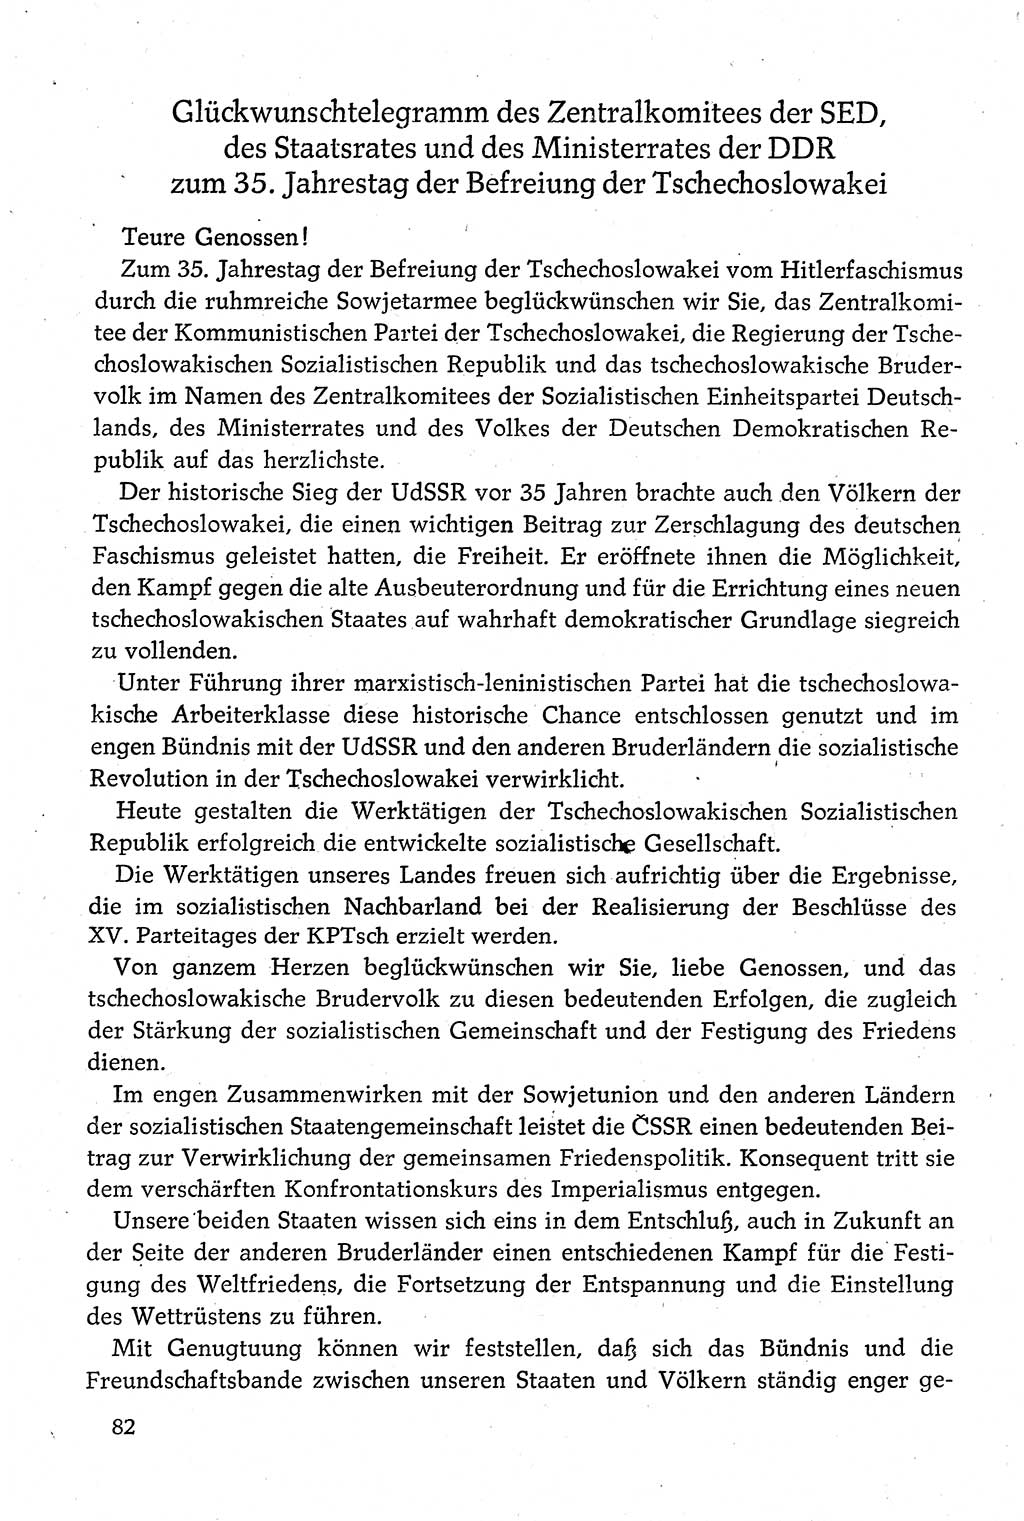 Dokumente der Sozialistischen Einheitspartei Deutschlands (SED) [Deutsche Demokratische Republik (DDR)] 1980-1981, Seite 82 (Dok. SED DDR 1980-1981, S. 82)